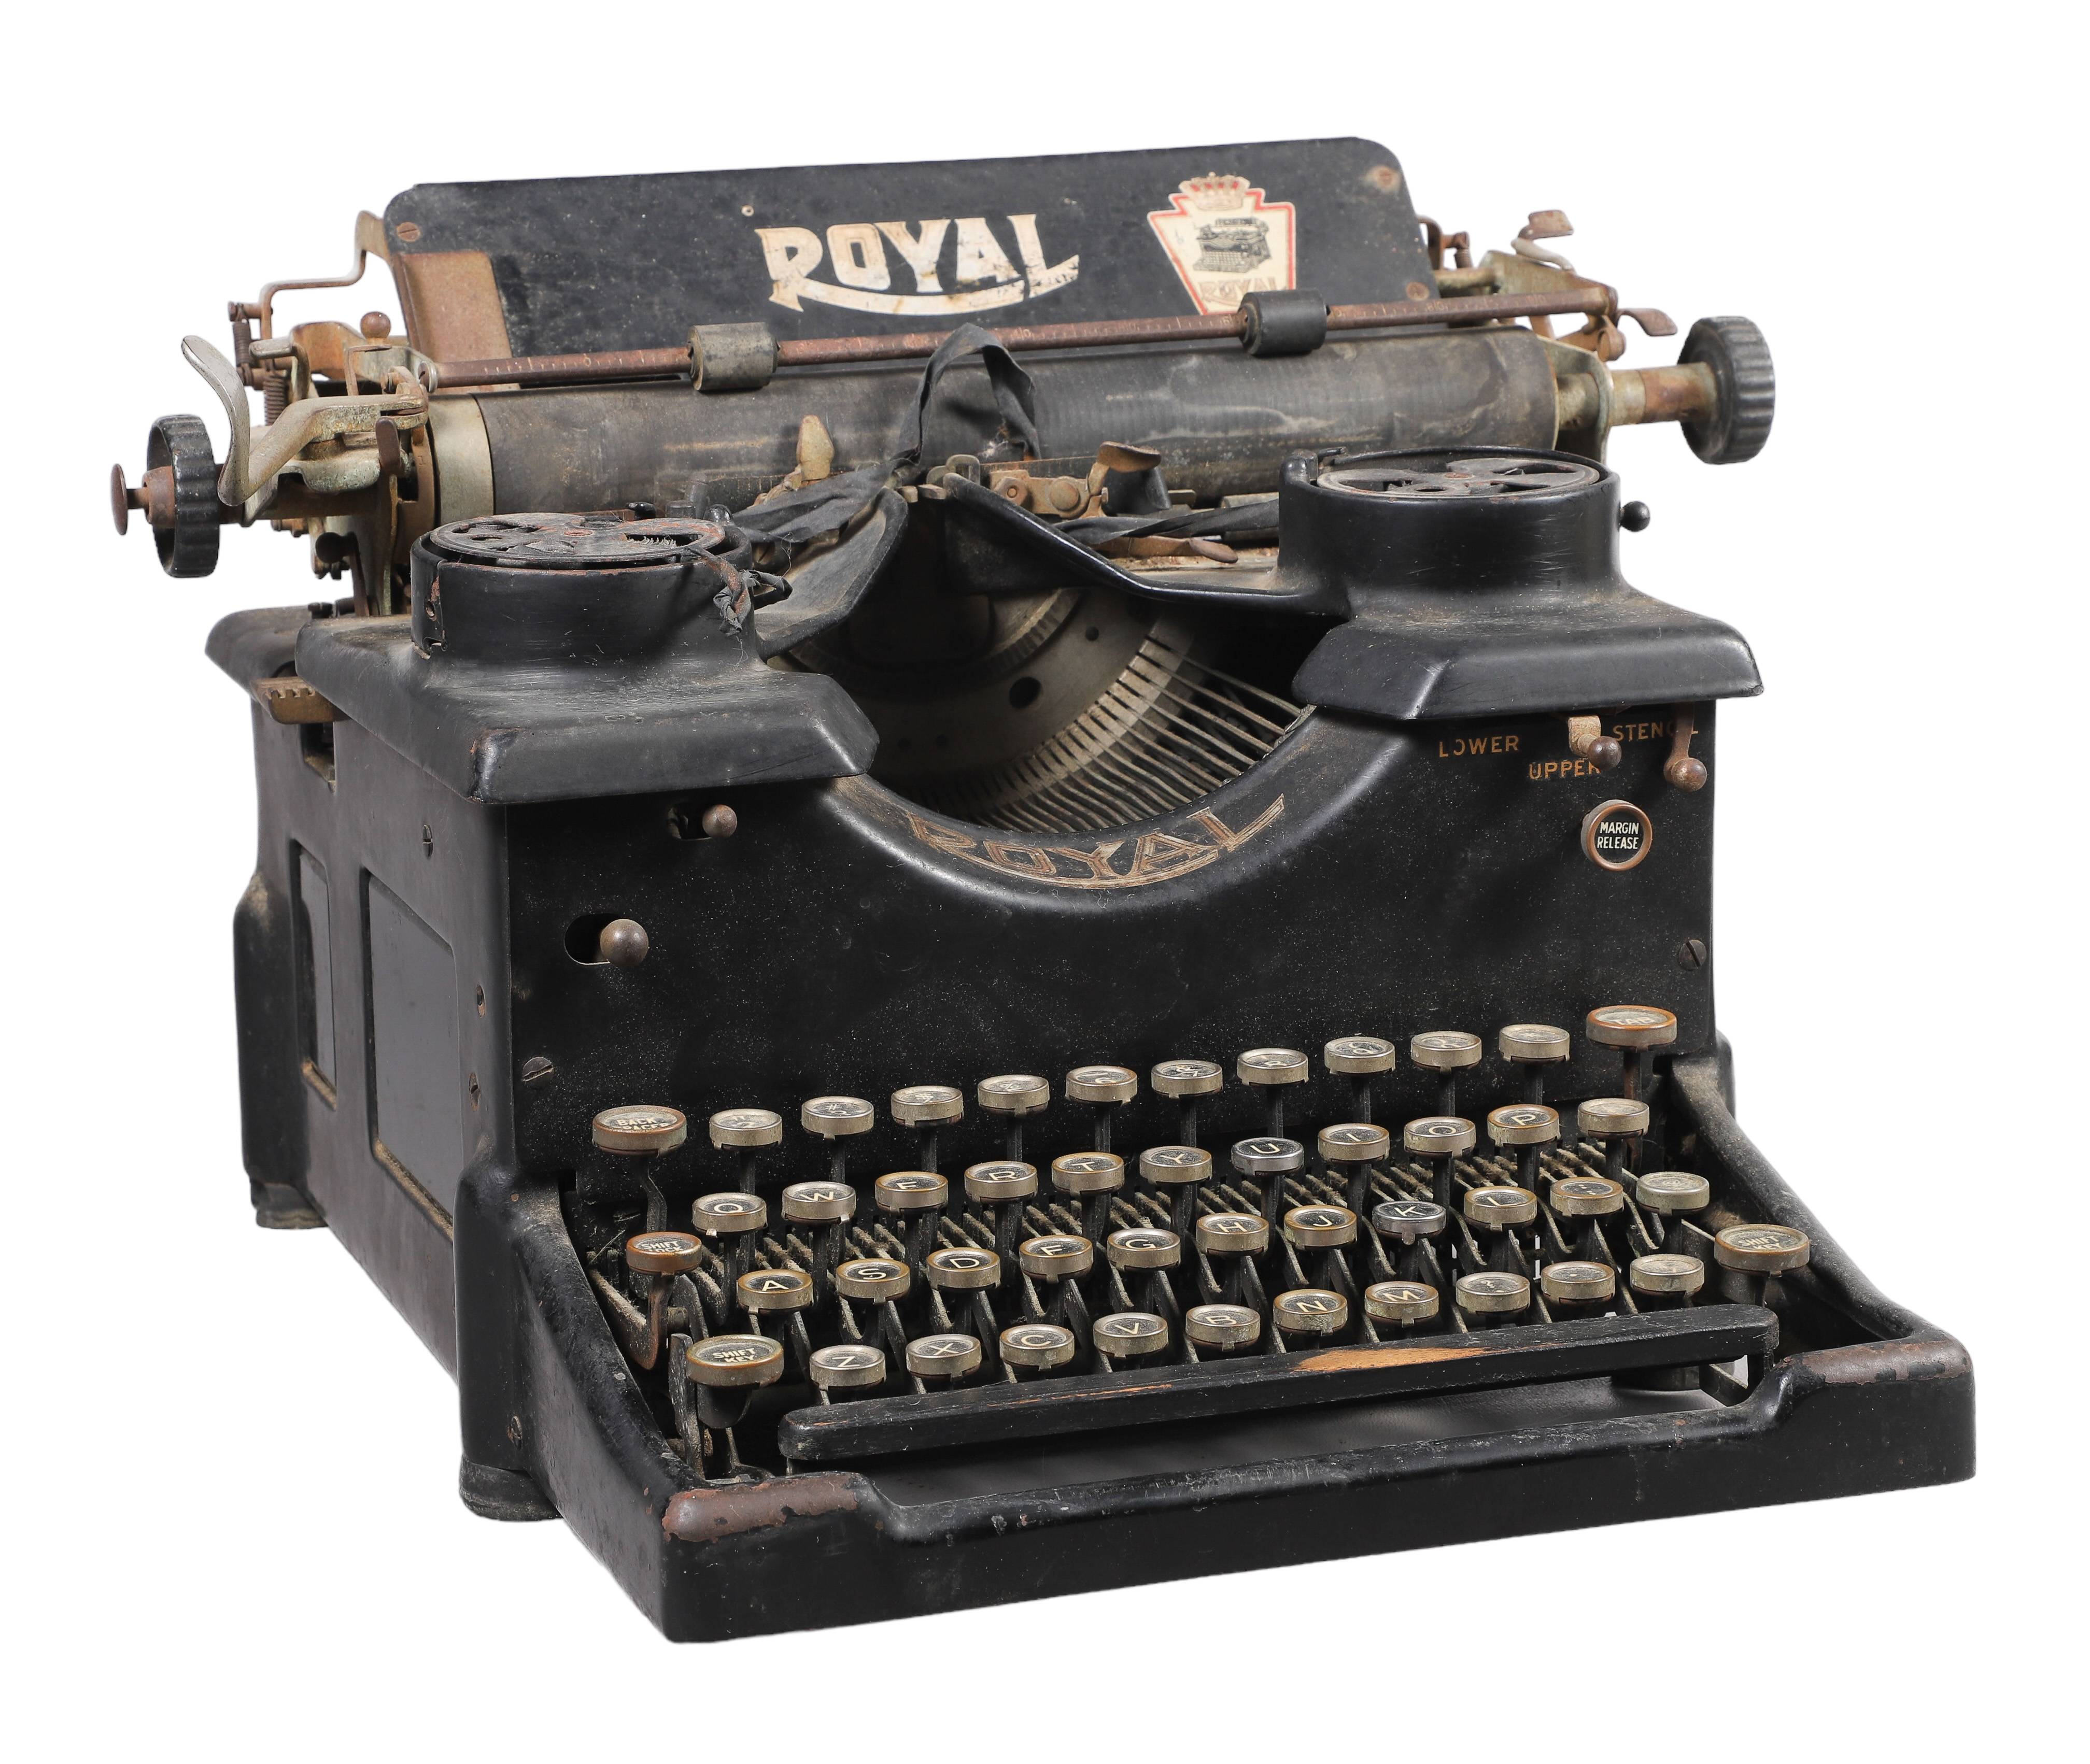 Royal Typewriter Co #10, black painted